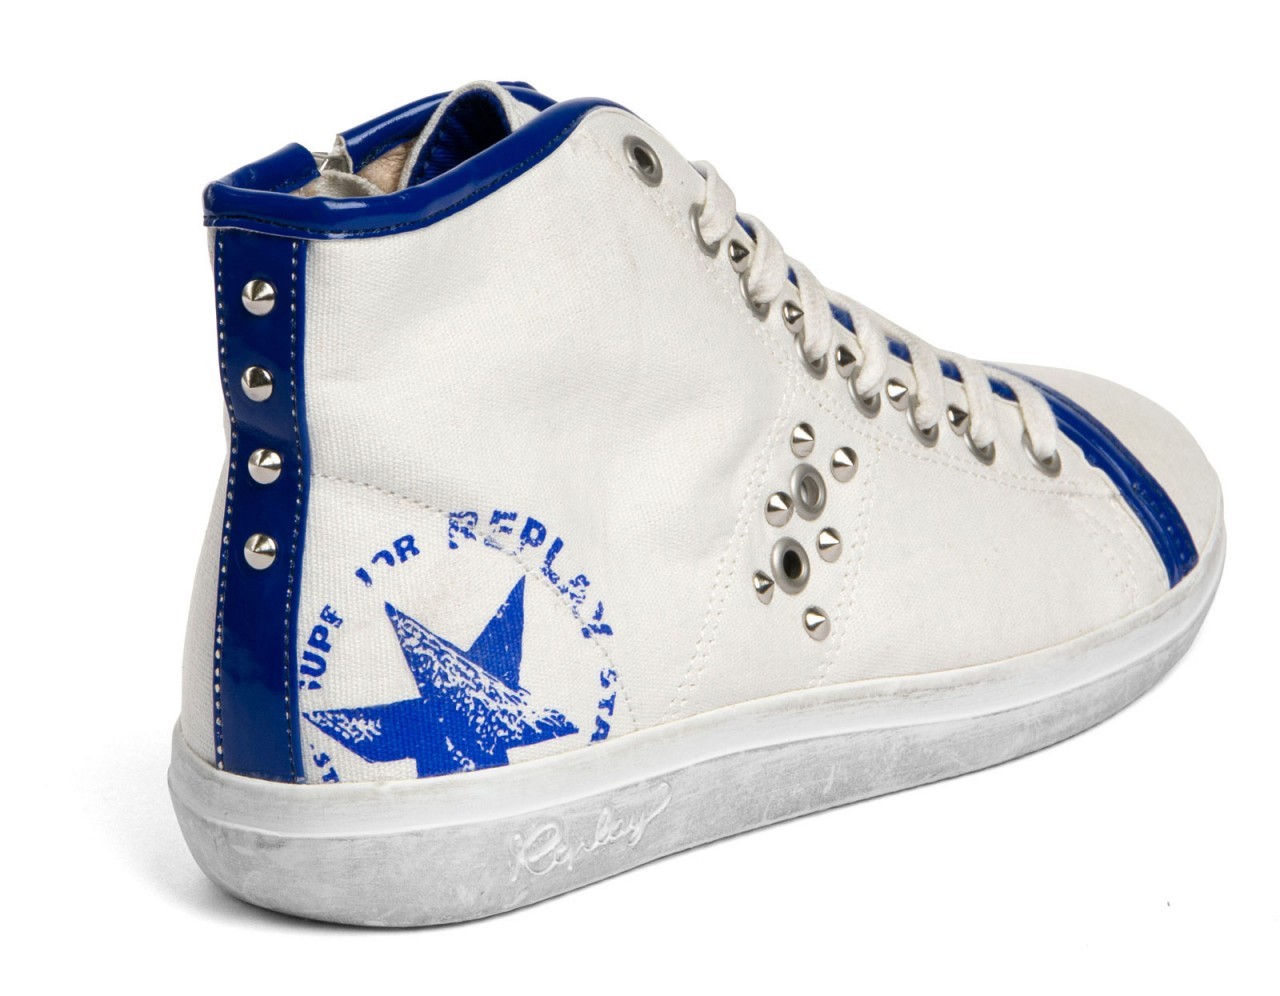 Replay kék-fehér szegecses tornacipő 2013.4.12 fotója